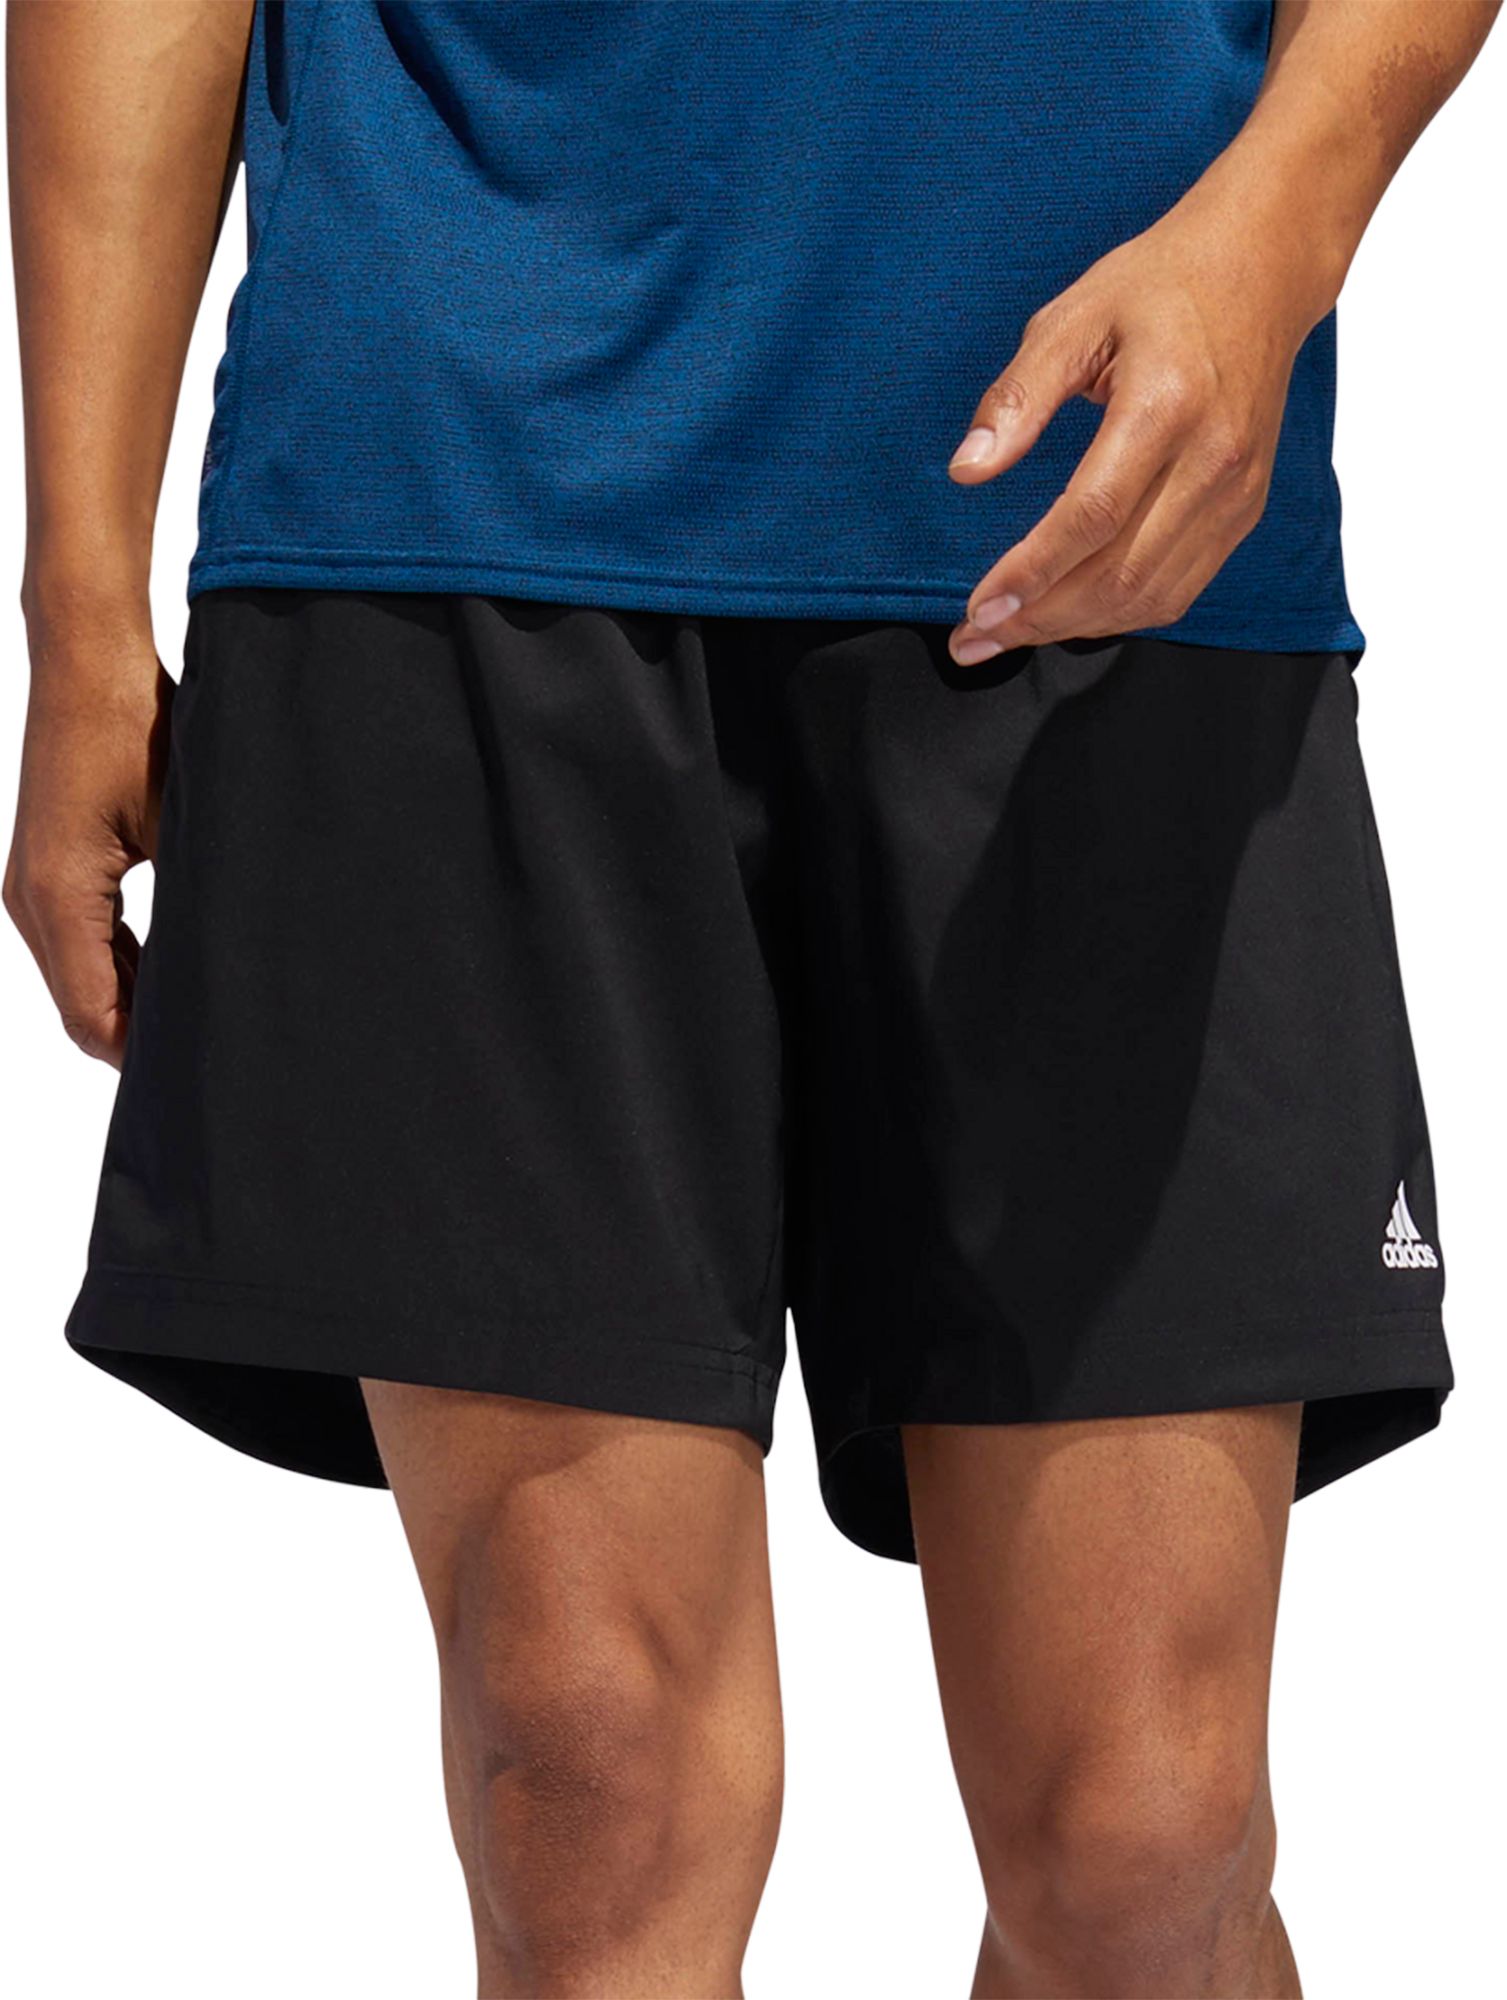 adidas own the run shorts